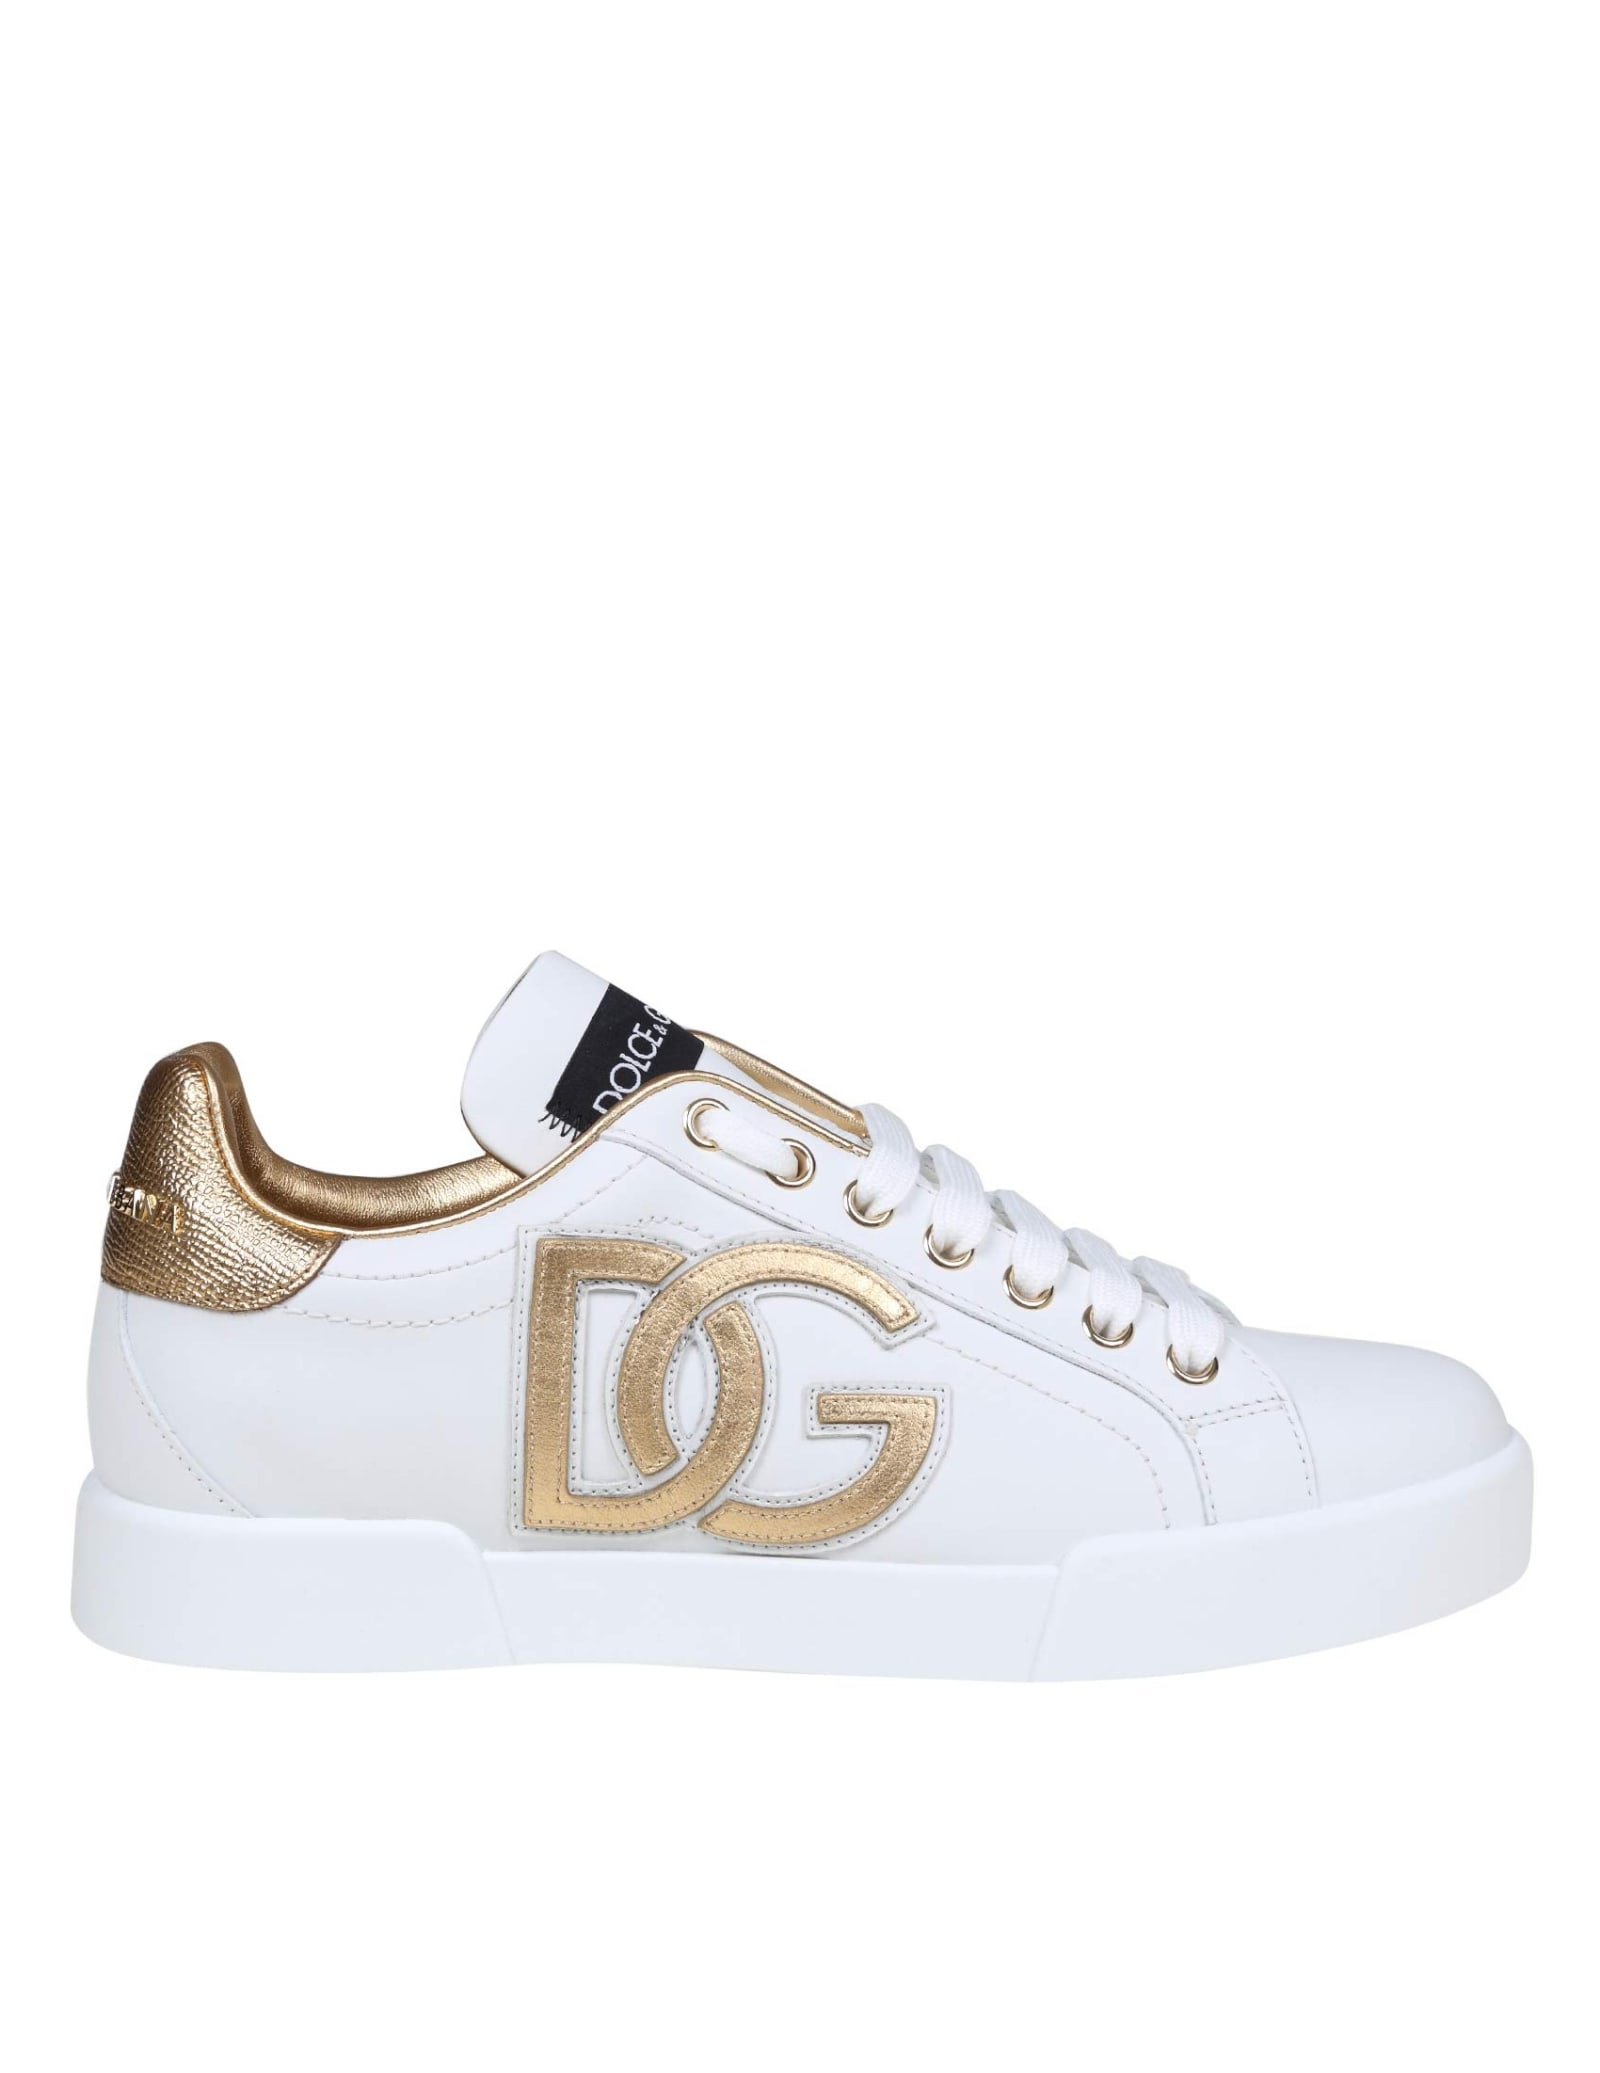 Dolce & Gabbana Portofino Sneakers In White Leather